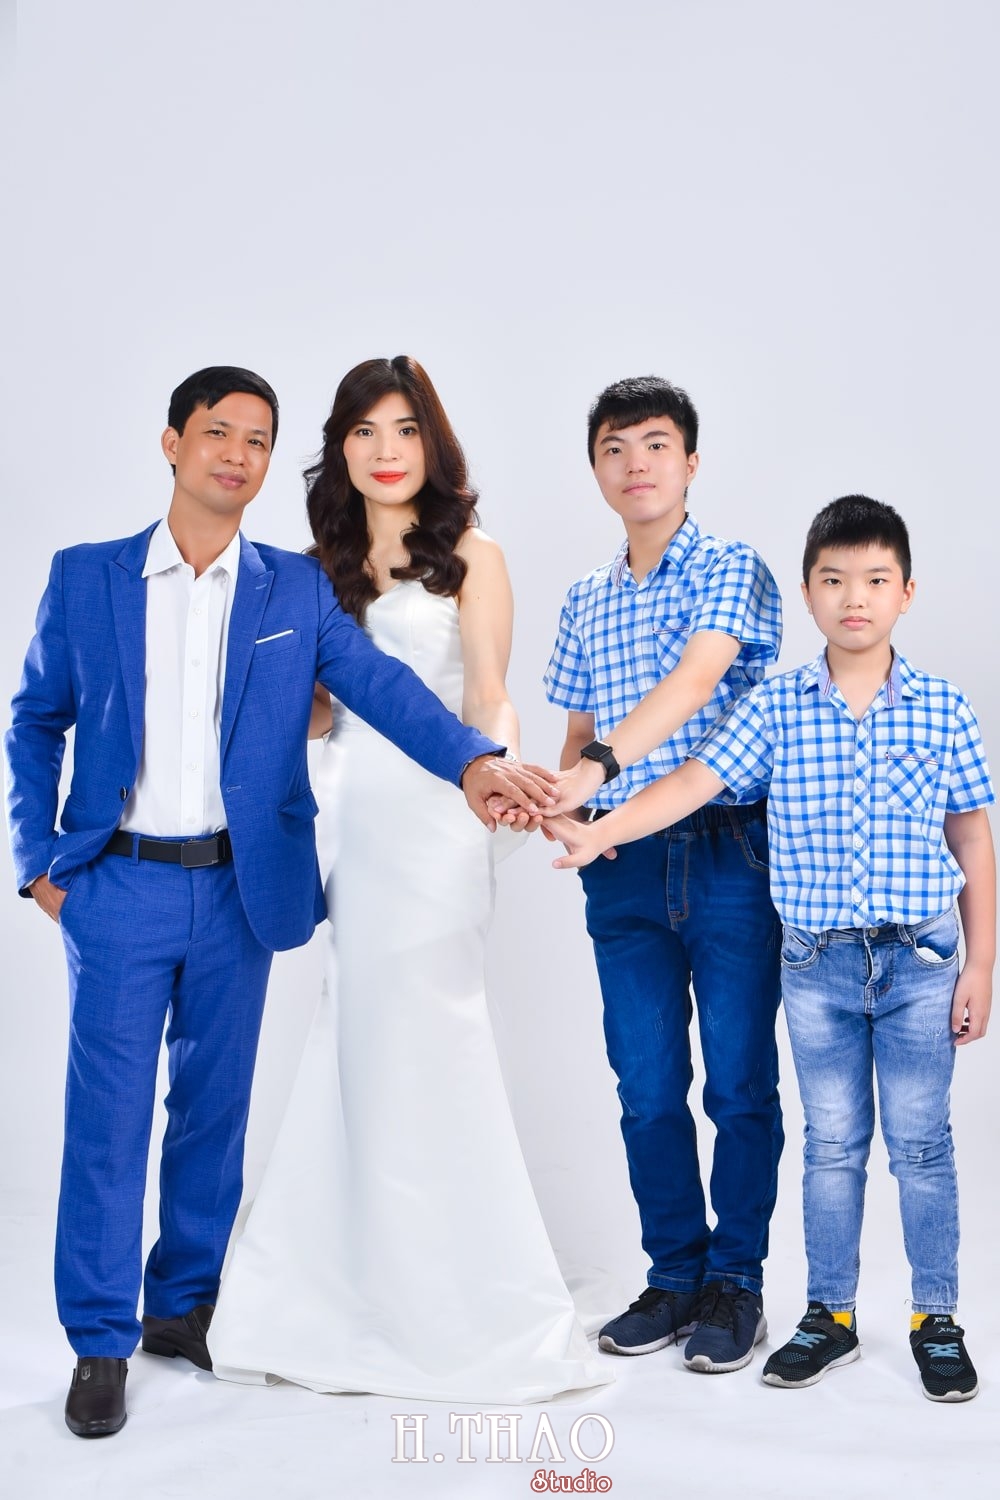 Anh gia dinh 4 nguoi 7 min - 45 cách tạo dáng chụp ảnh gia đình 4 người ấn tượng nhất - HThao Studio